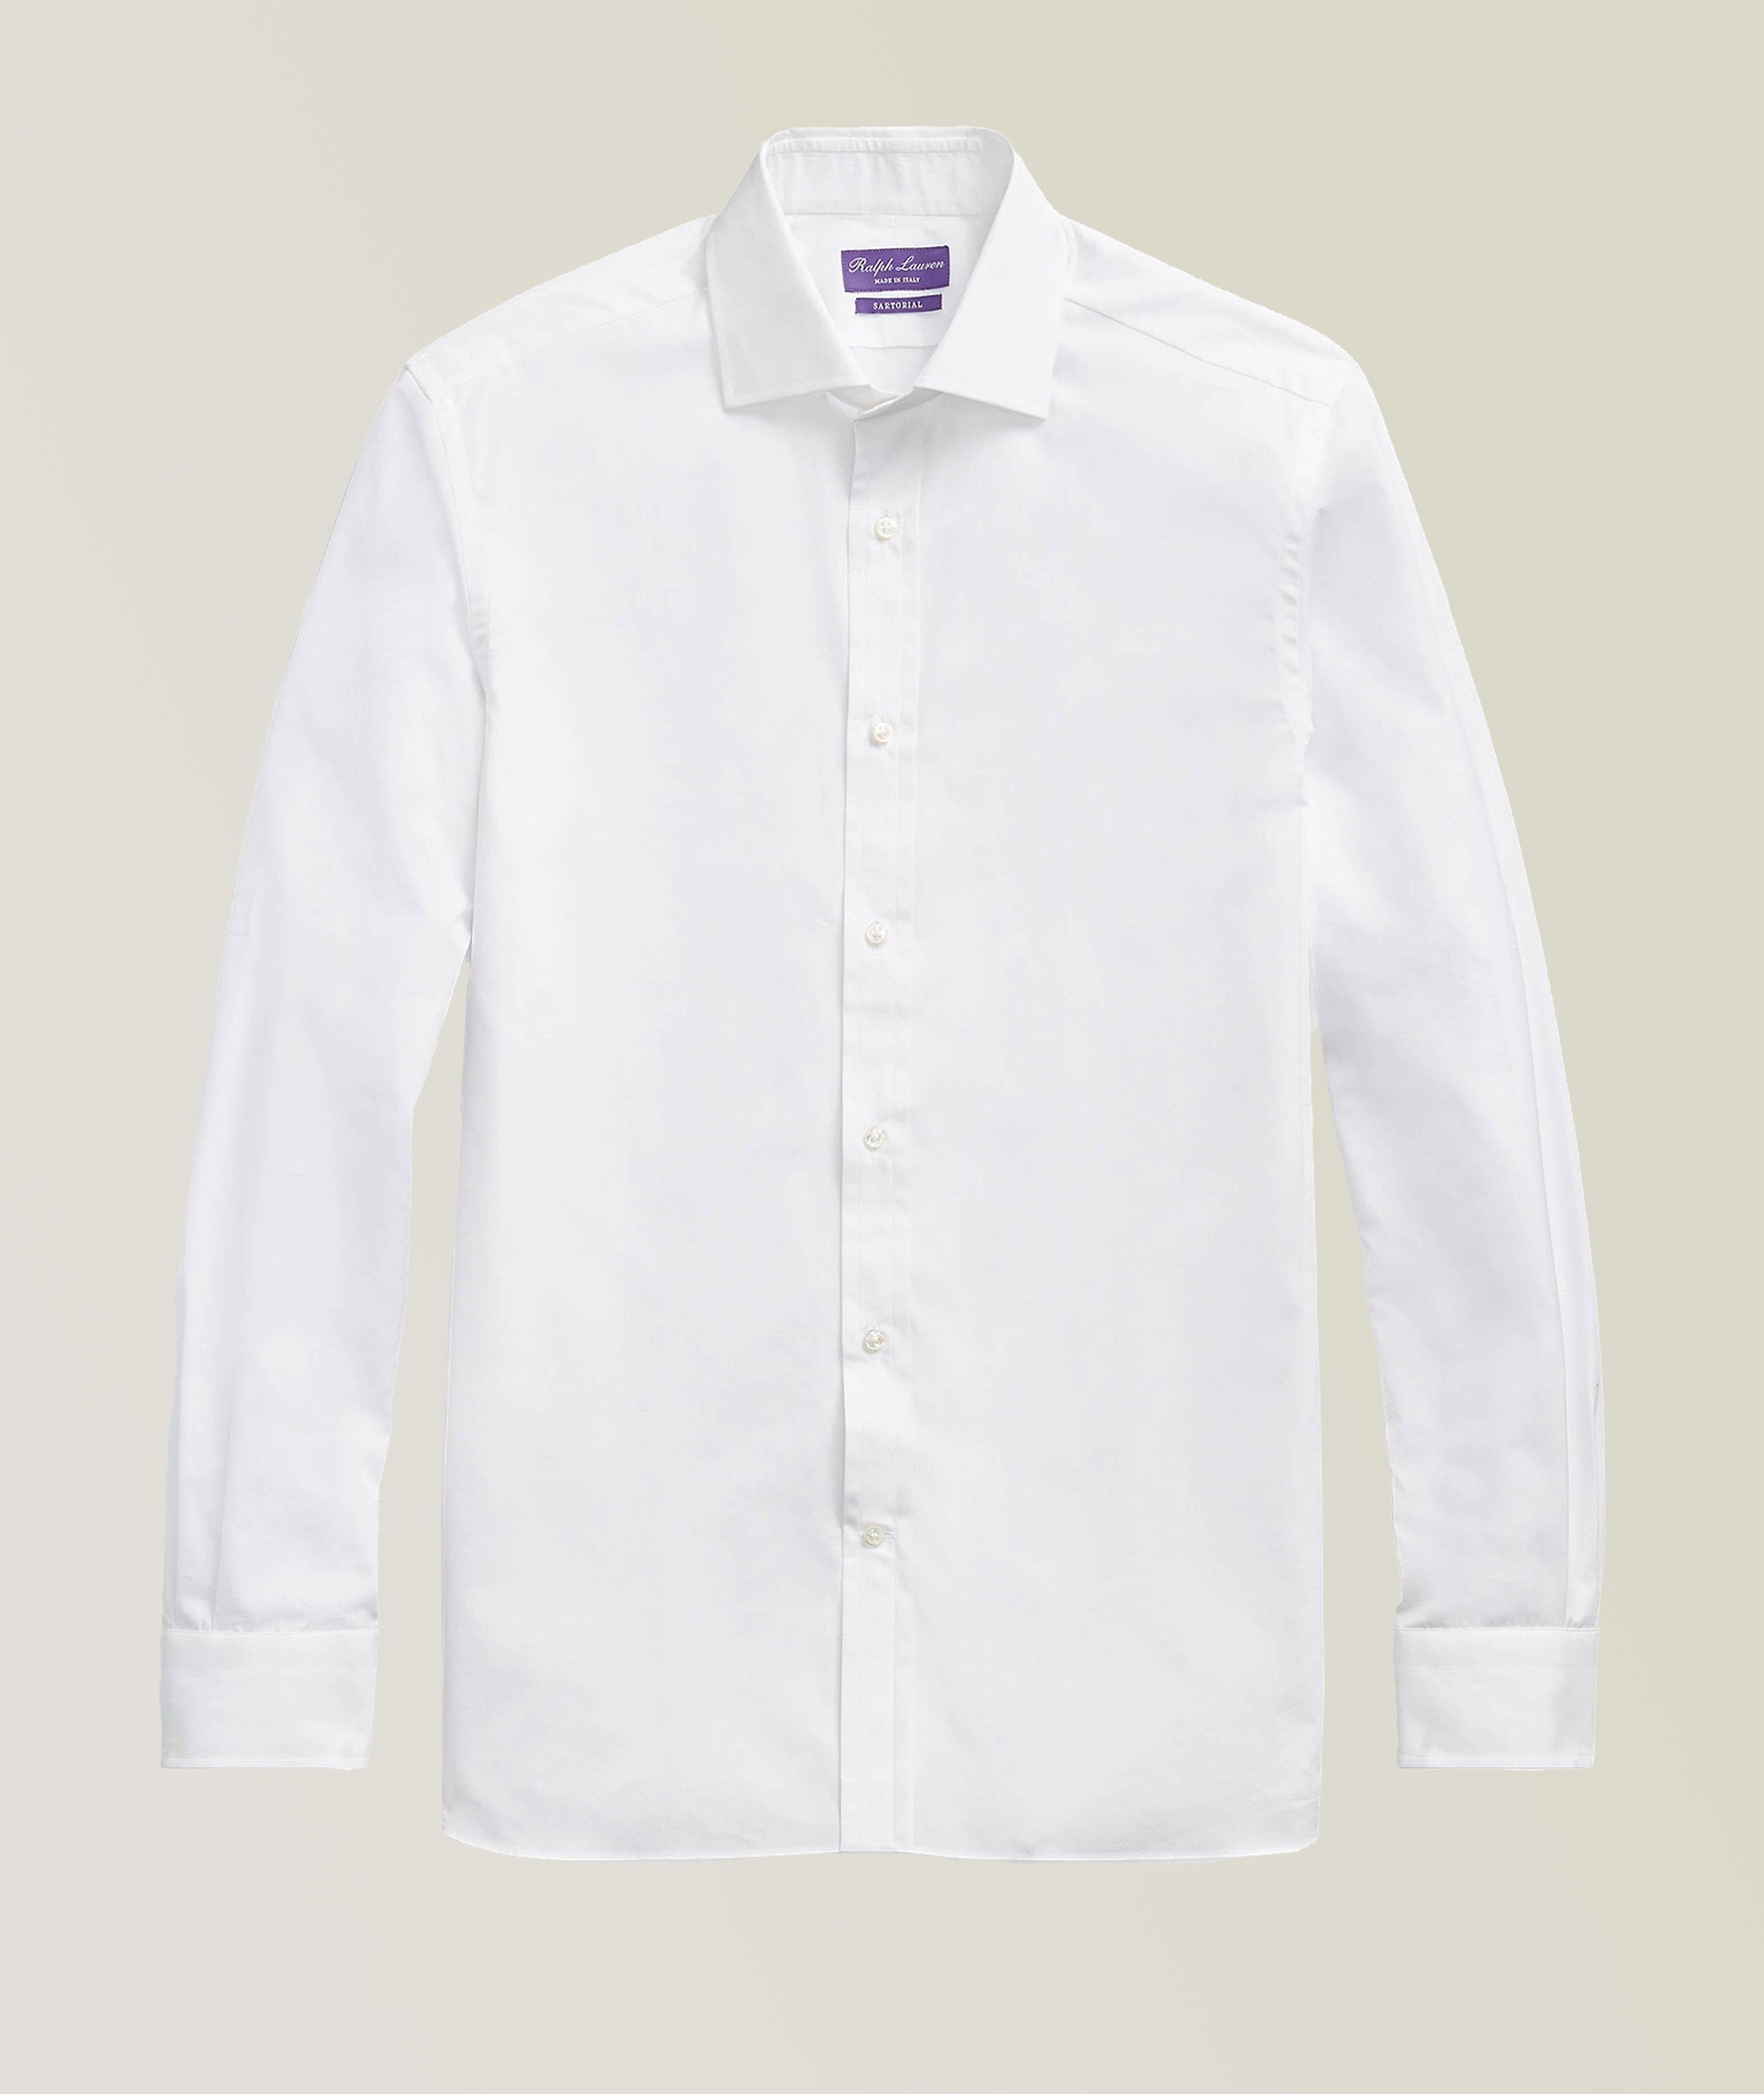 Contemporary-Fit Cotton Blend Dress Shirt image 0